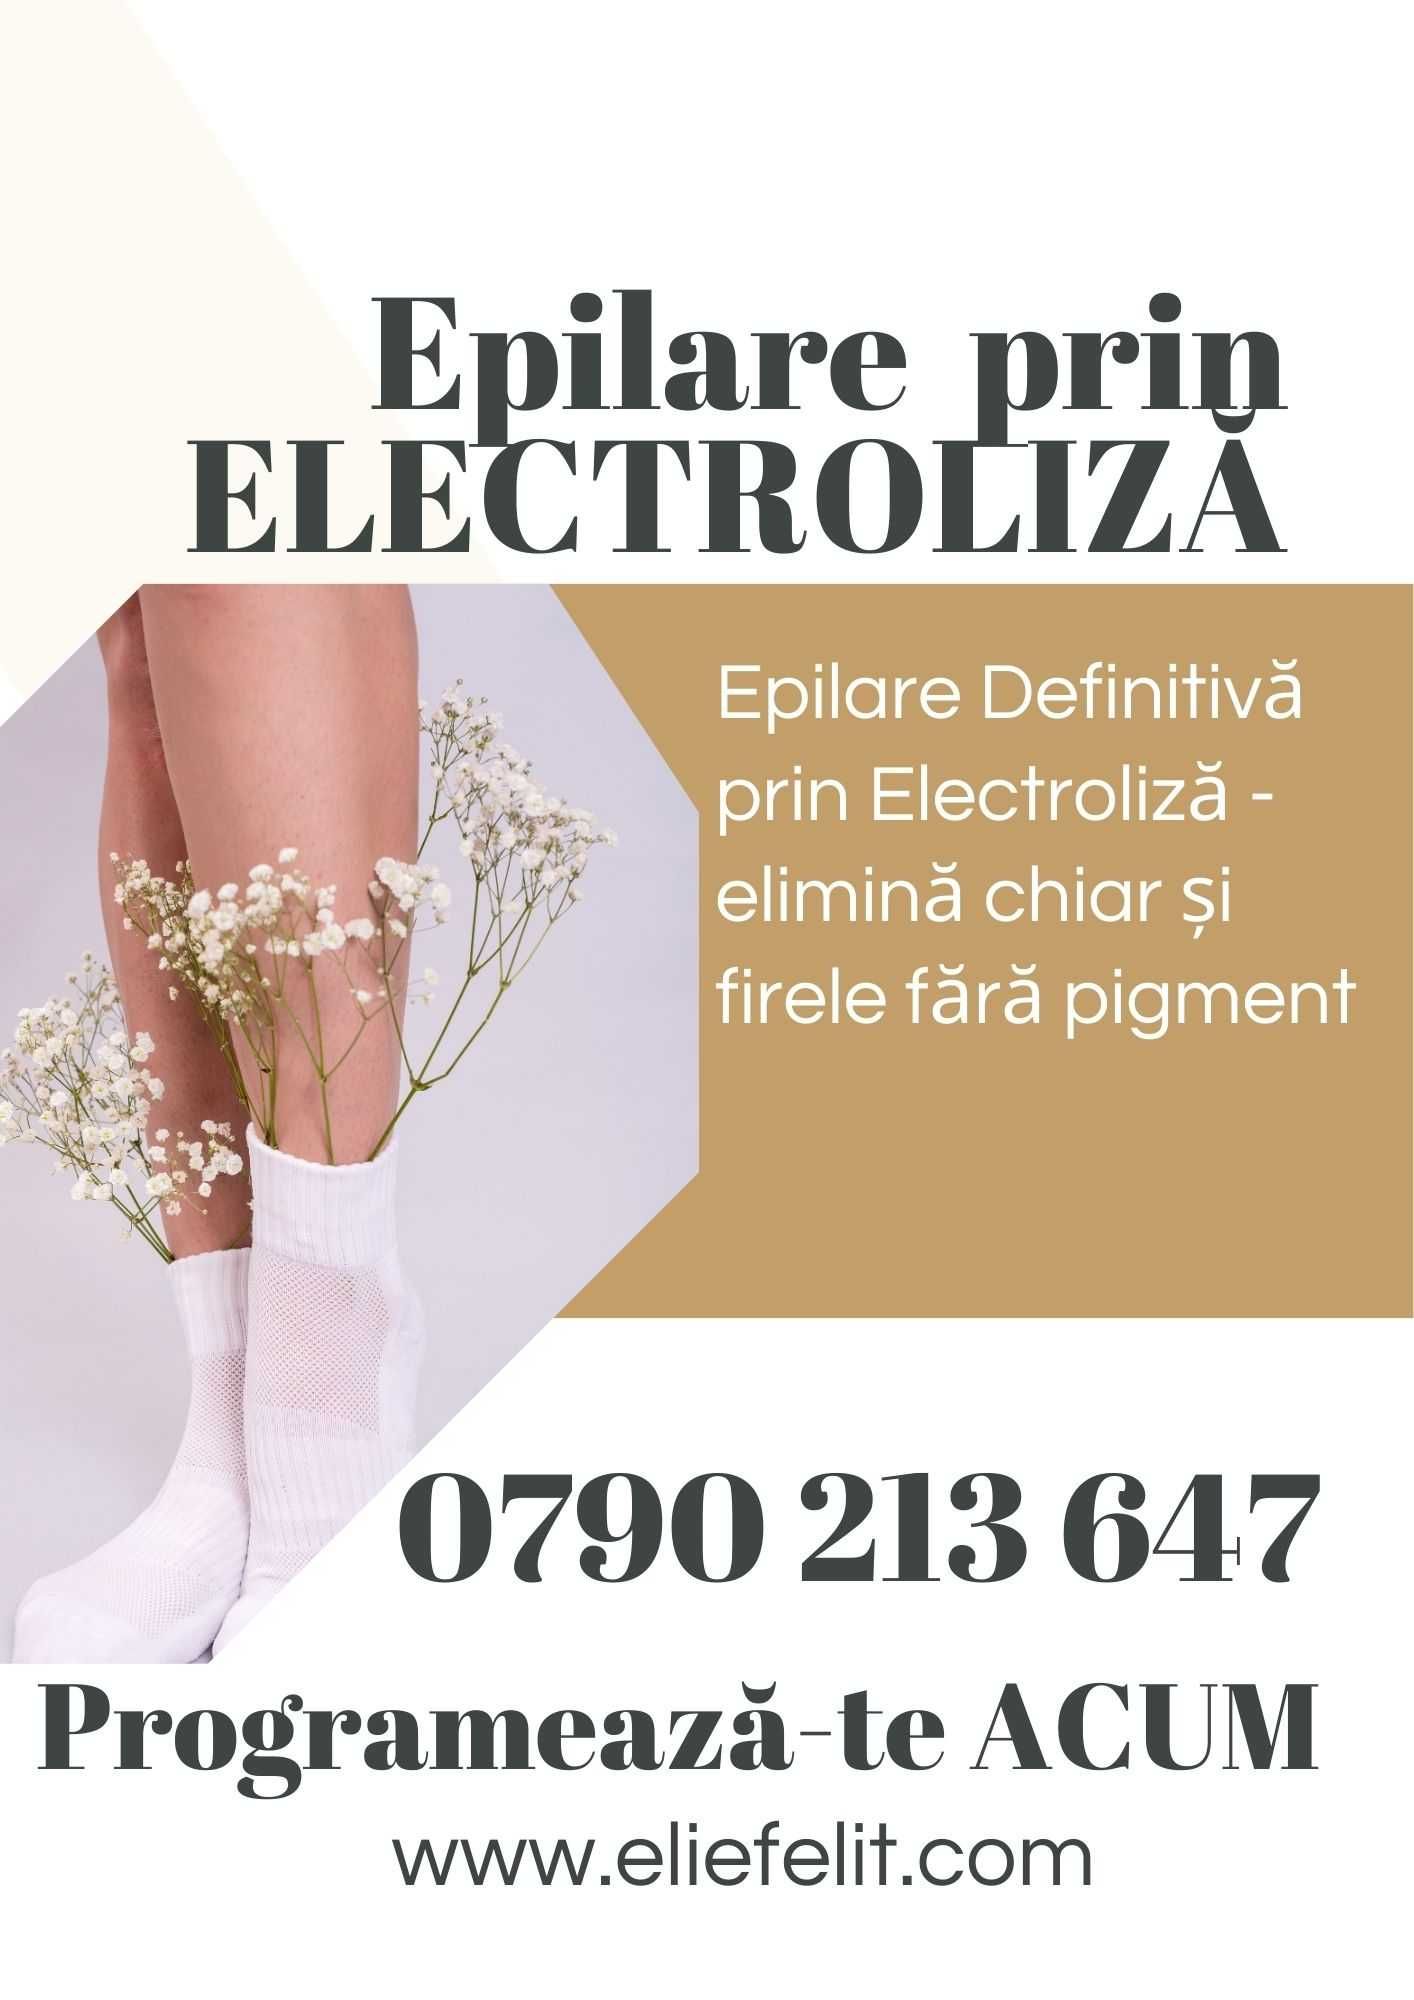 Epilare cu Electroliză - ElectroEpilare - Iași